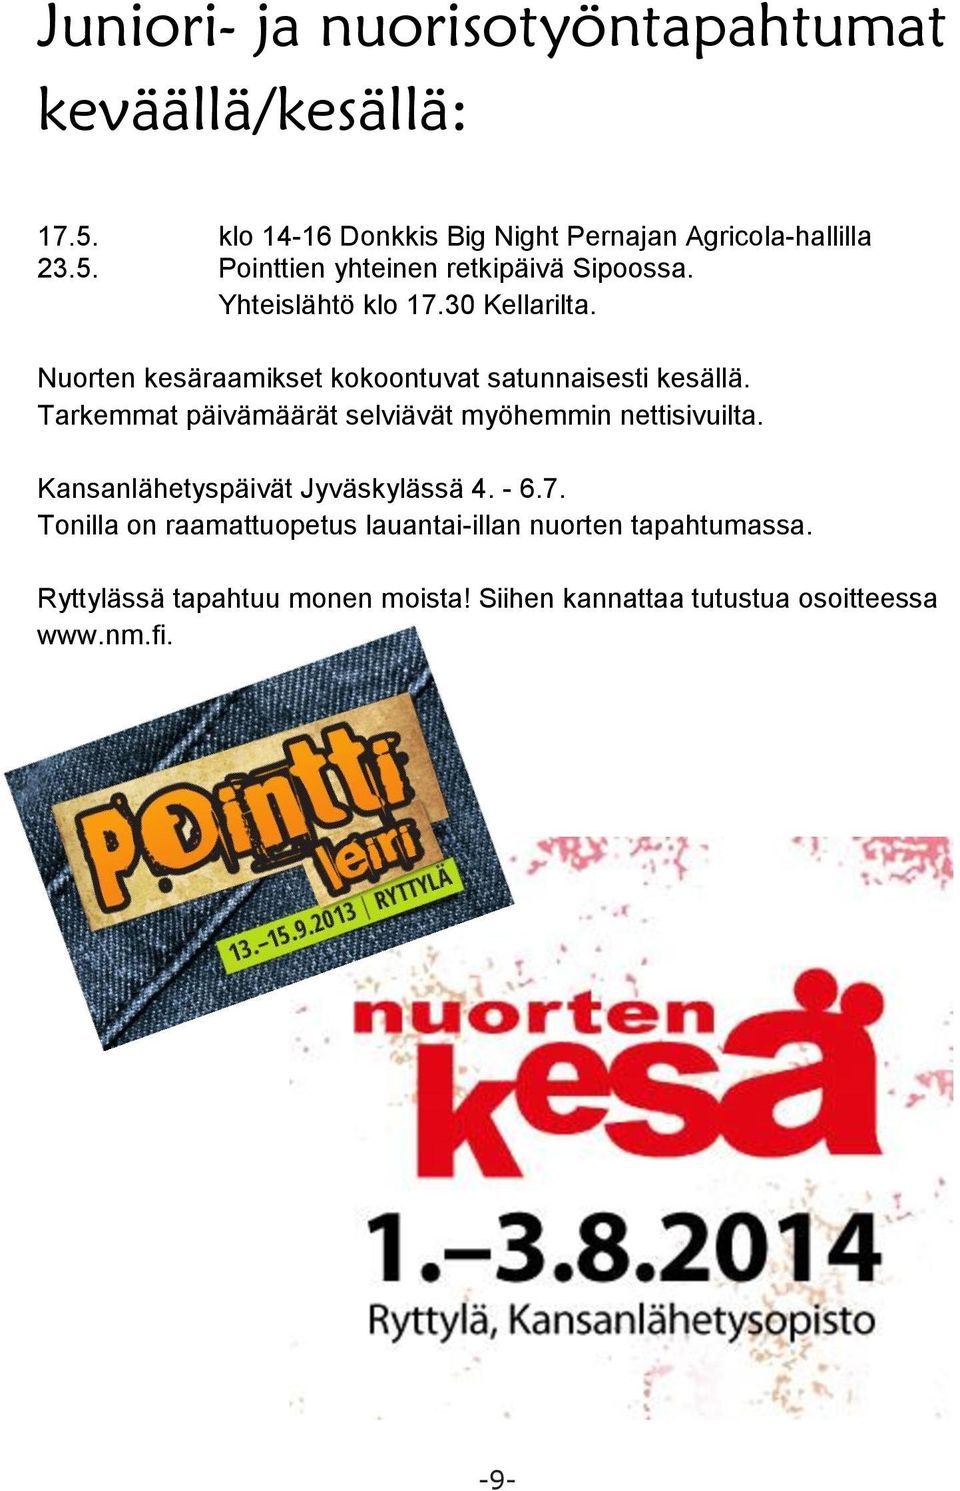 Tarkemmat päivämäärät selviävät myöhemmin nettisivuilta. Kansanlähetyspäivät Jyväskylässä 4. - 6.7.